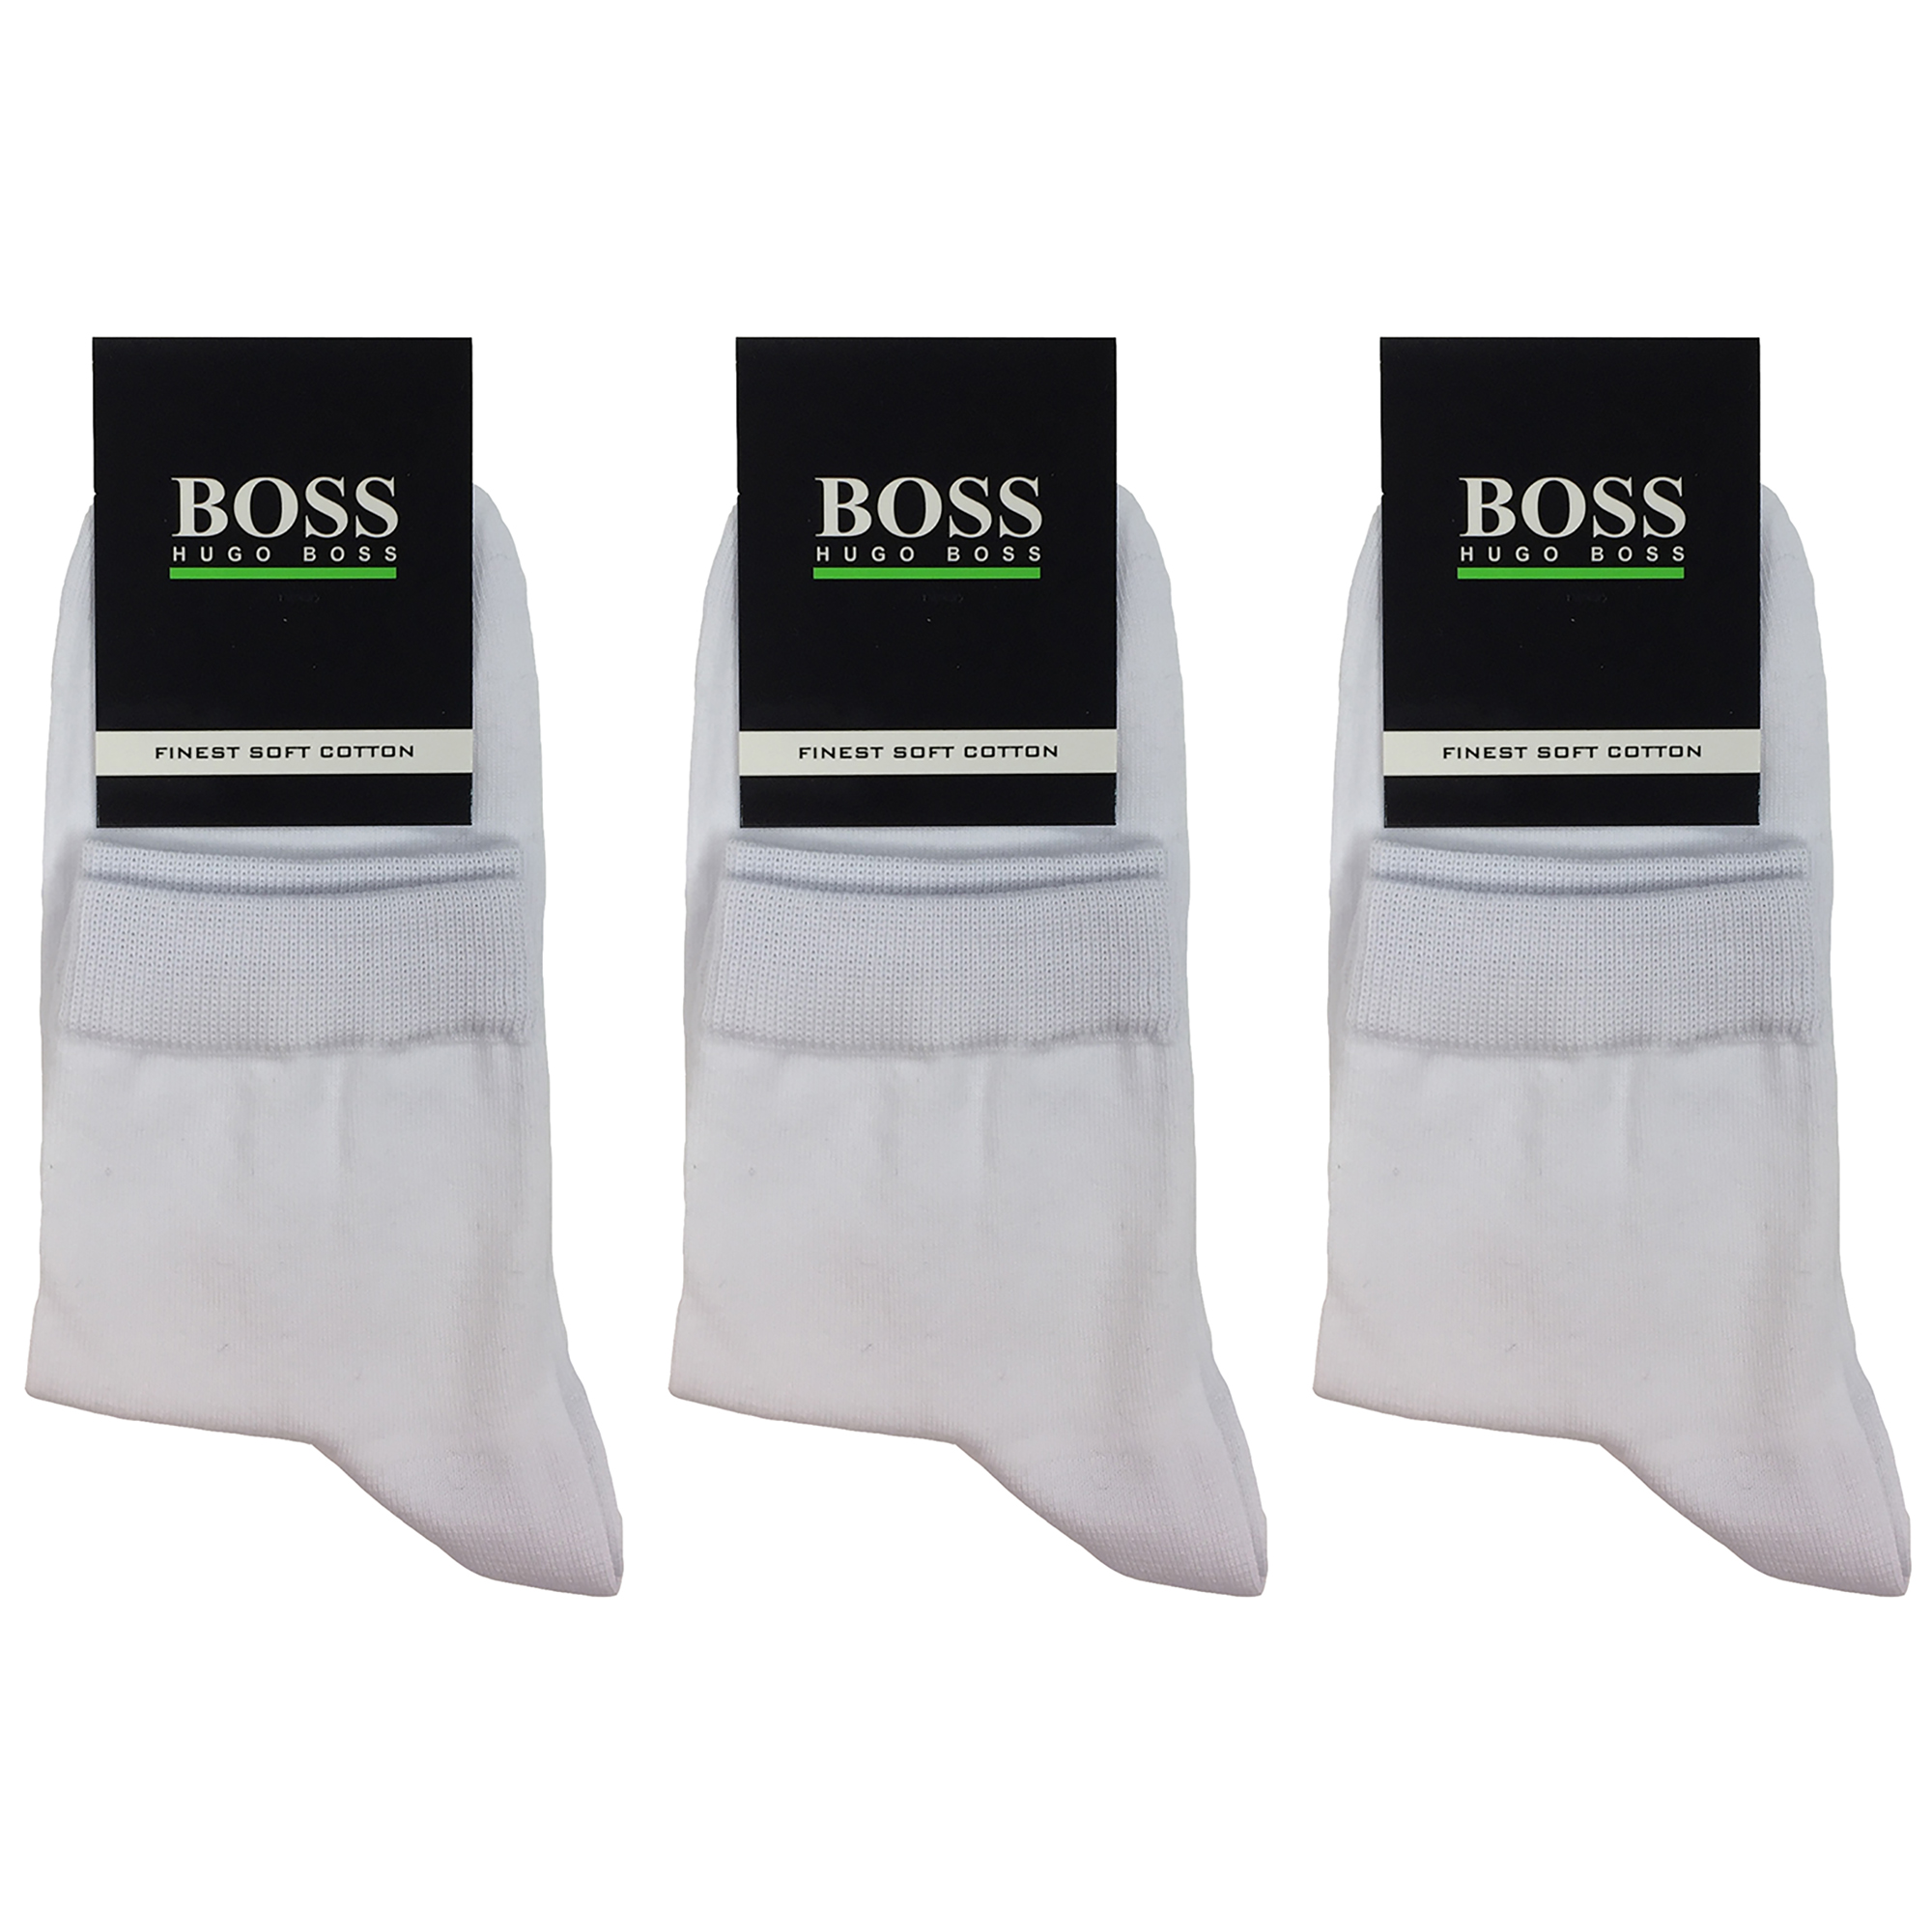 جوراب مردانه مدل BON1001 بسته 3 عددی رنگ سفید